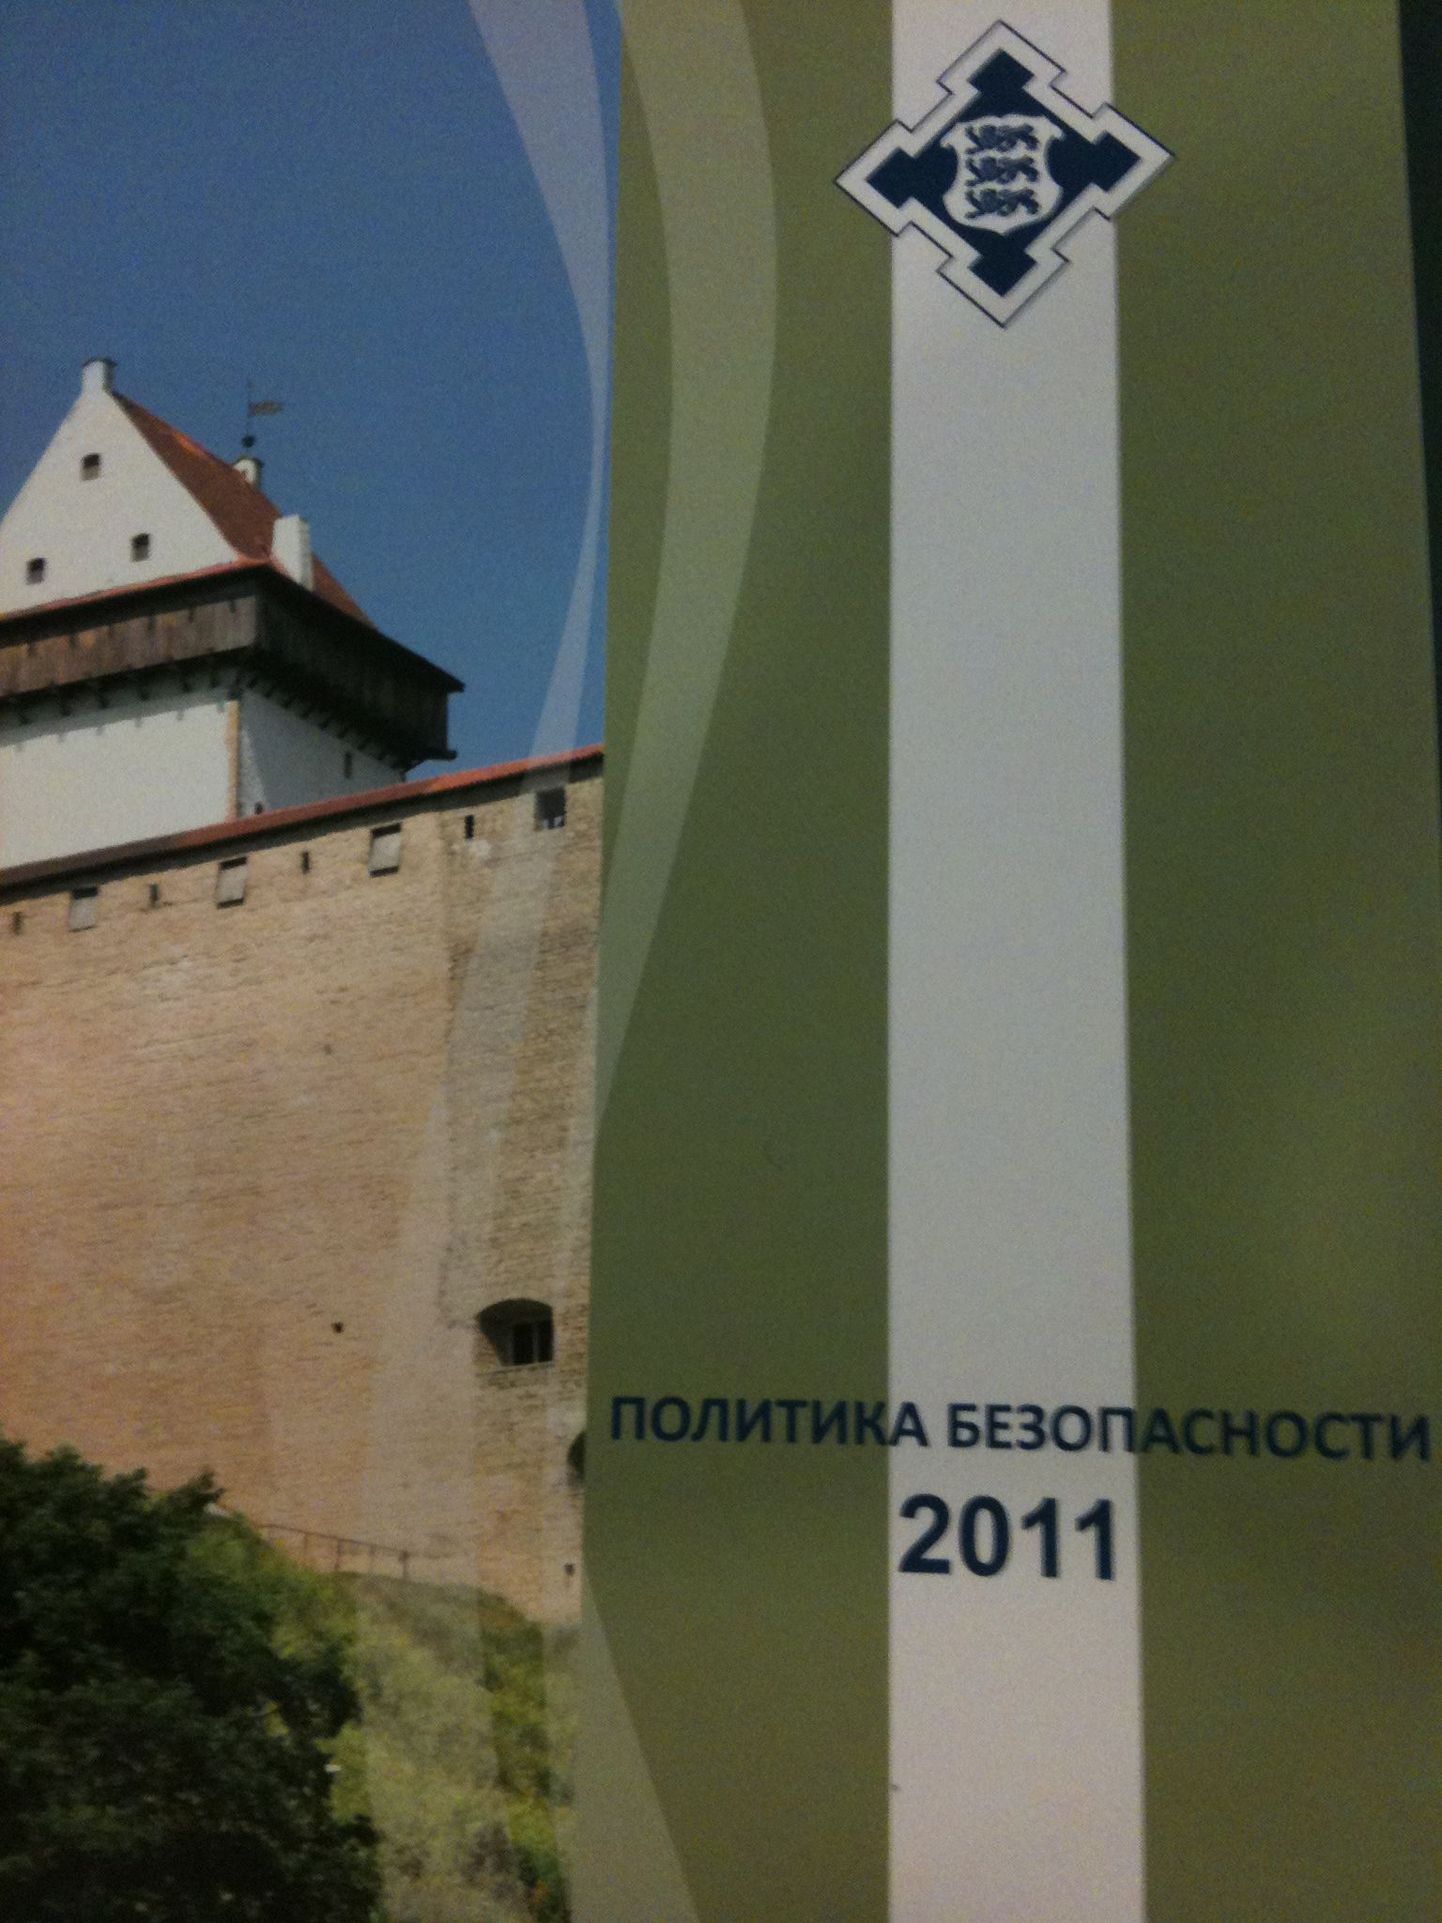 Книга "Политика безопасности 2011", изданная Министерством внутренних дел.